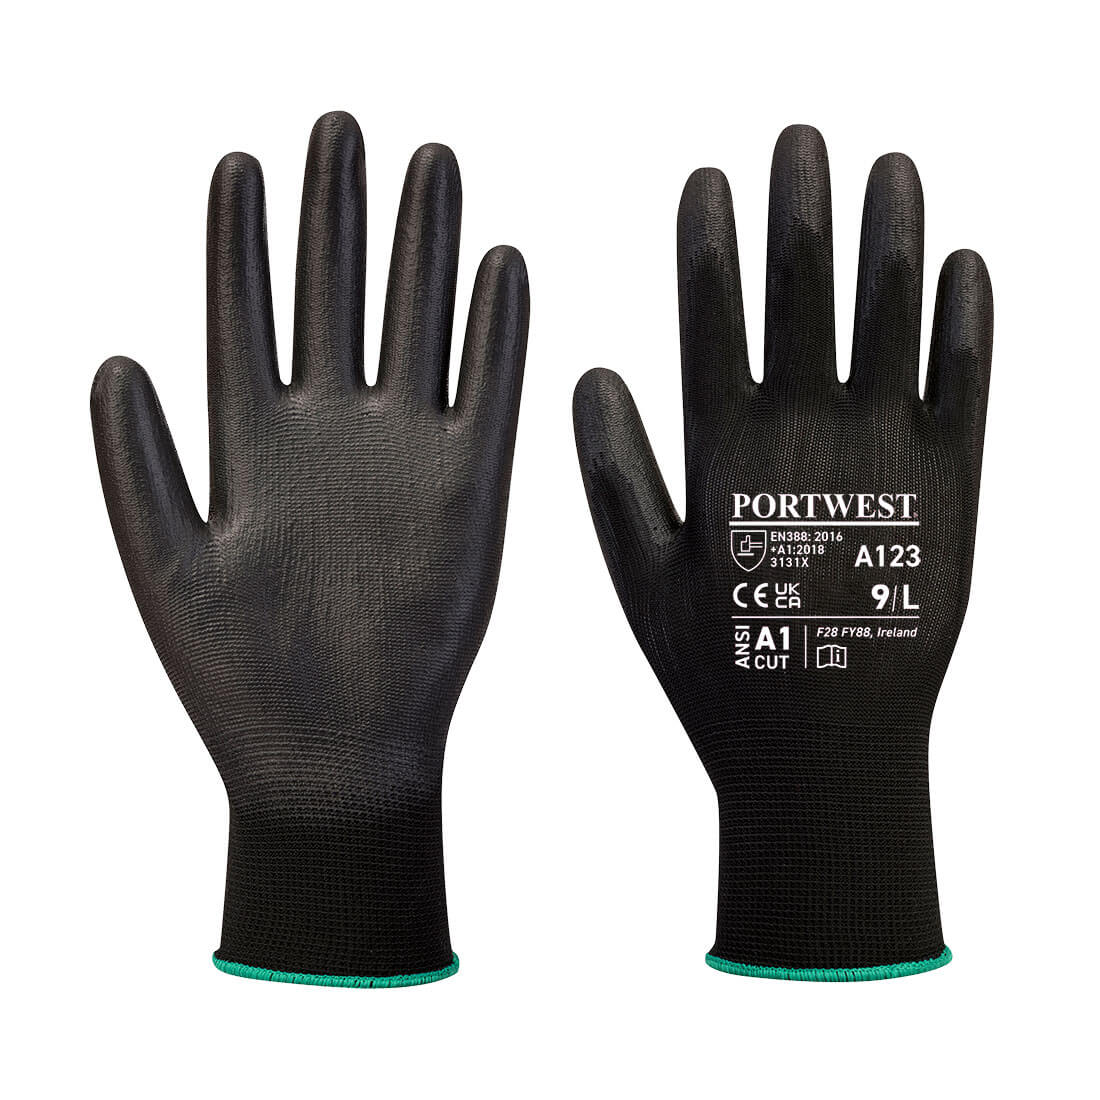 Portwest PU Palm Glove Latex Free